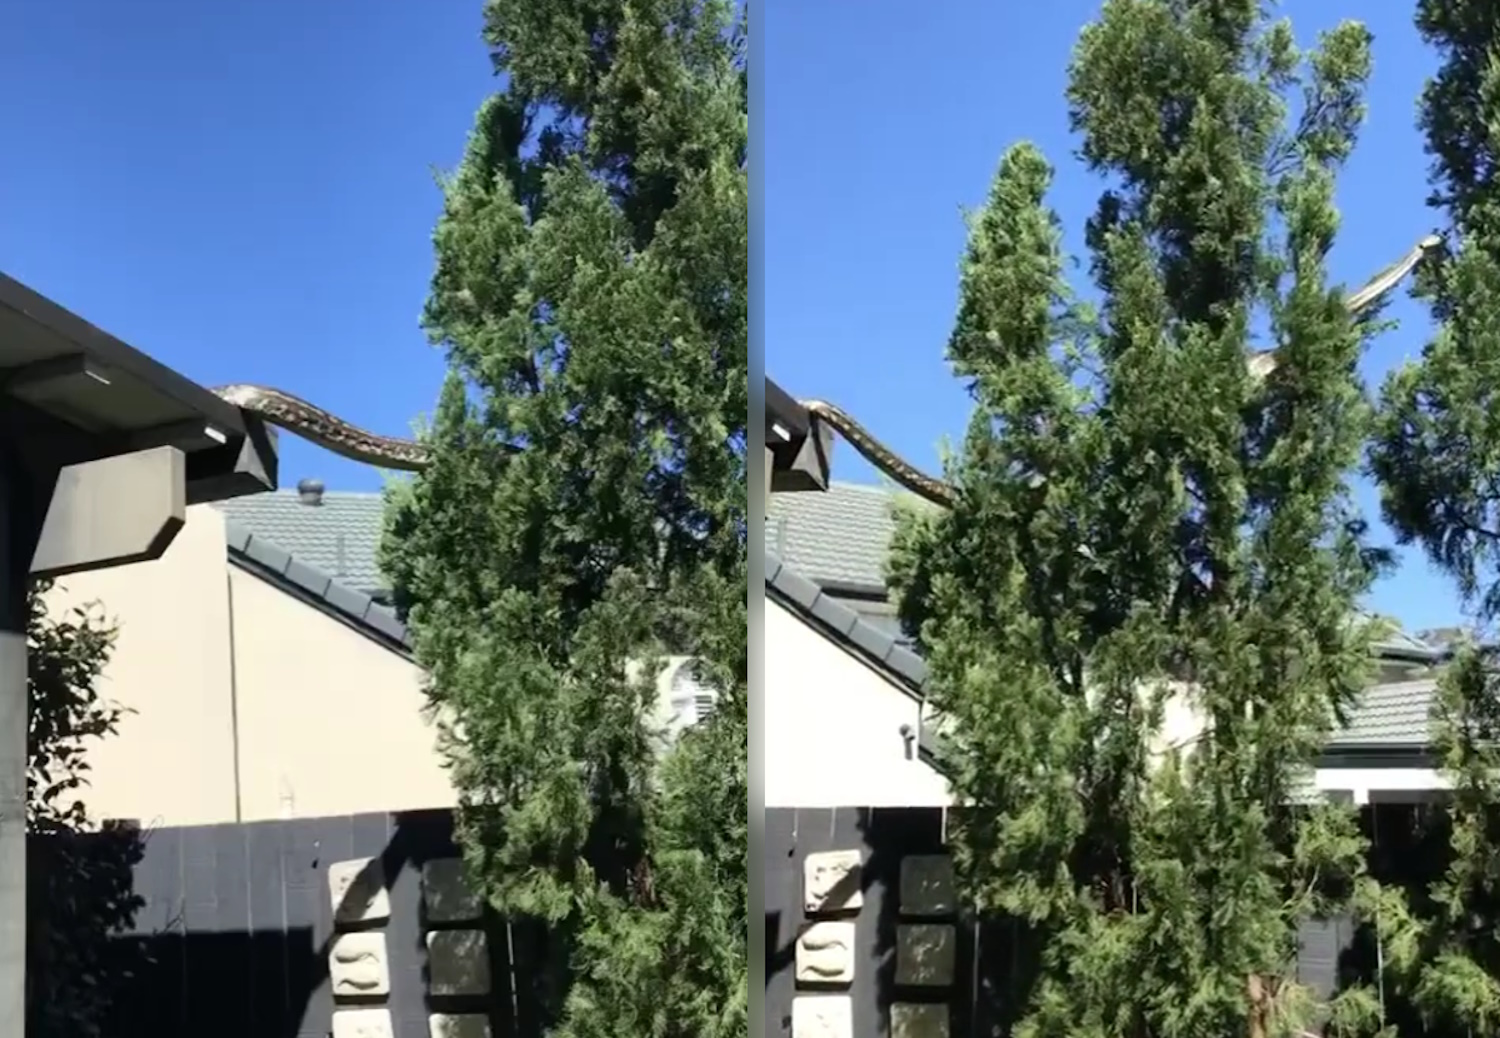 Αυστραλία: Πύθωνας 5 μέτρων περνάει από στέγη σπιτιού – Βίντεο κατέγραψε την επίσκεψή του